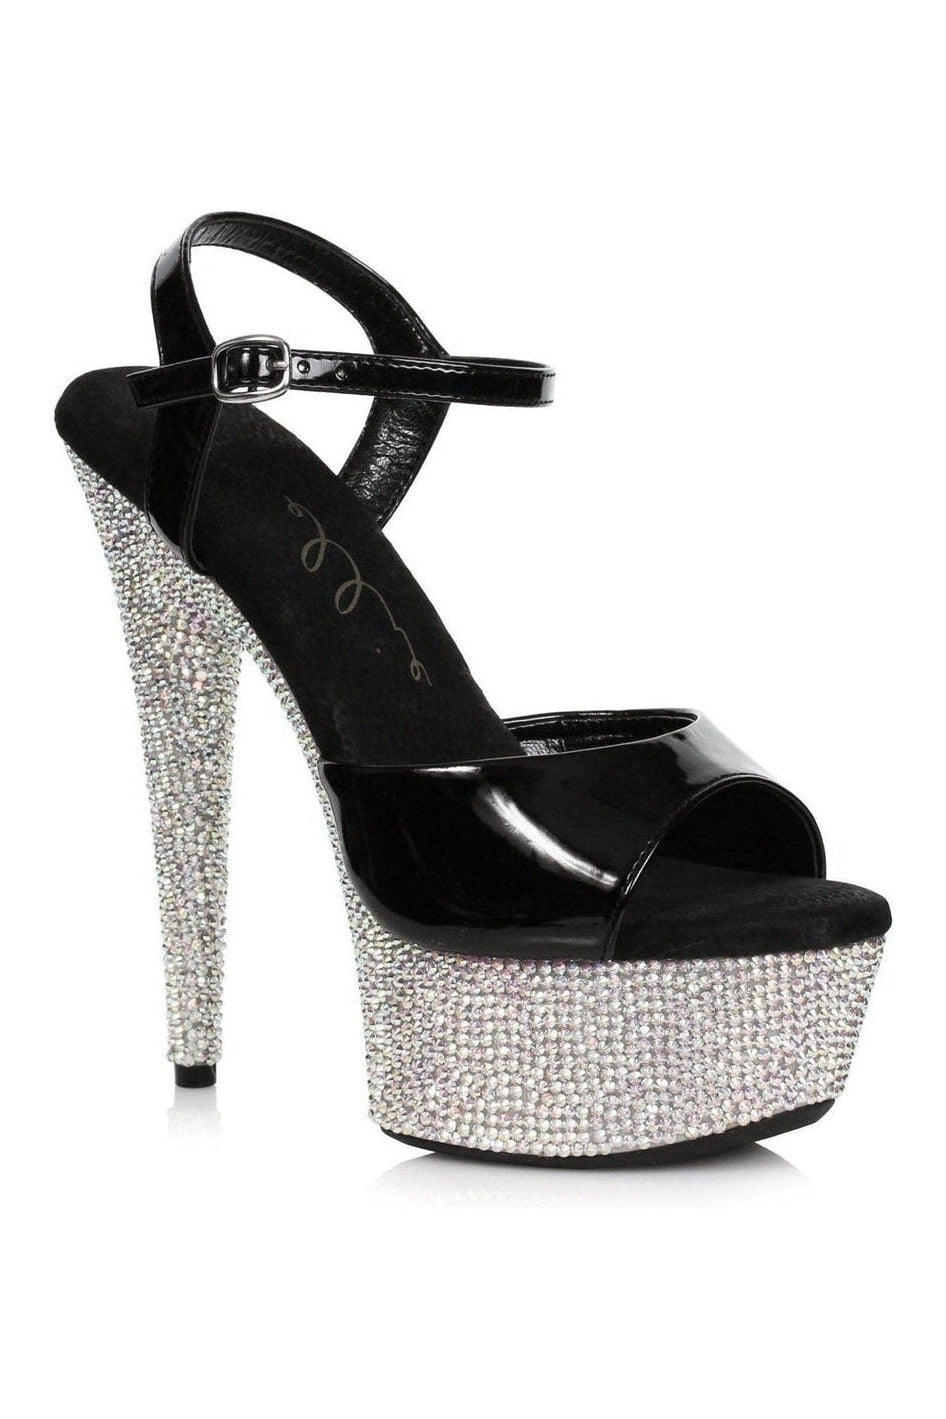 609-MAXINE Stripper Sandal | Black Patent-Ellie Shoes-SEXYSHOES.COM